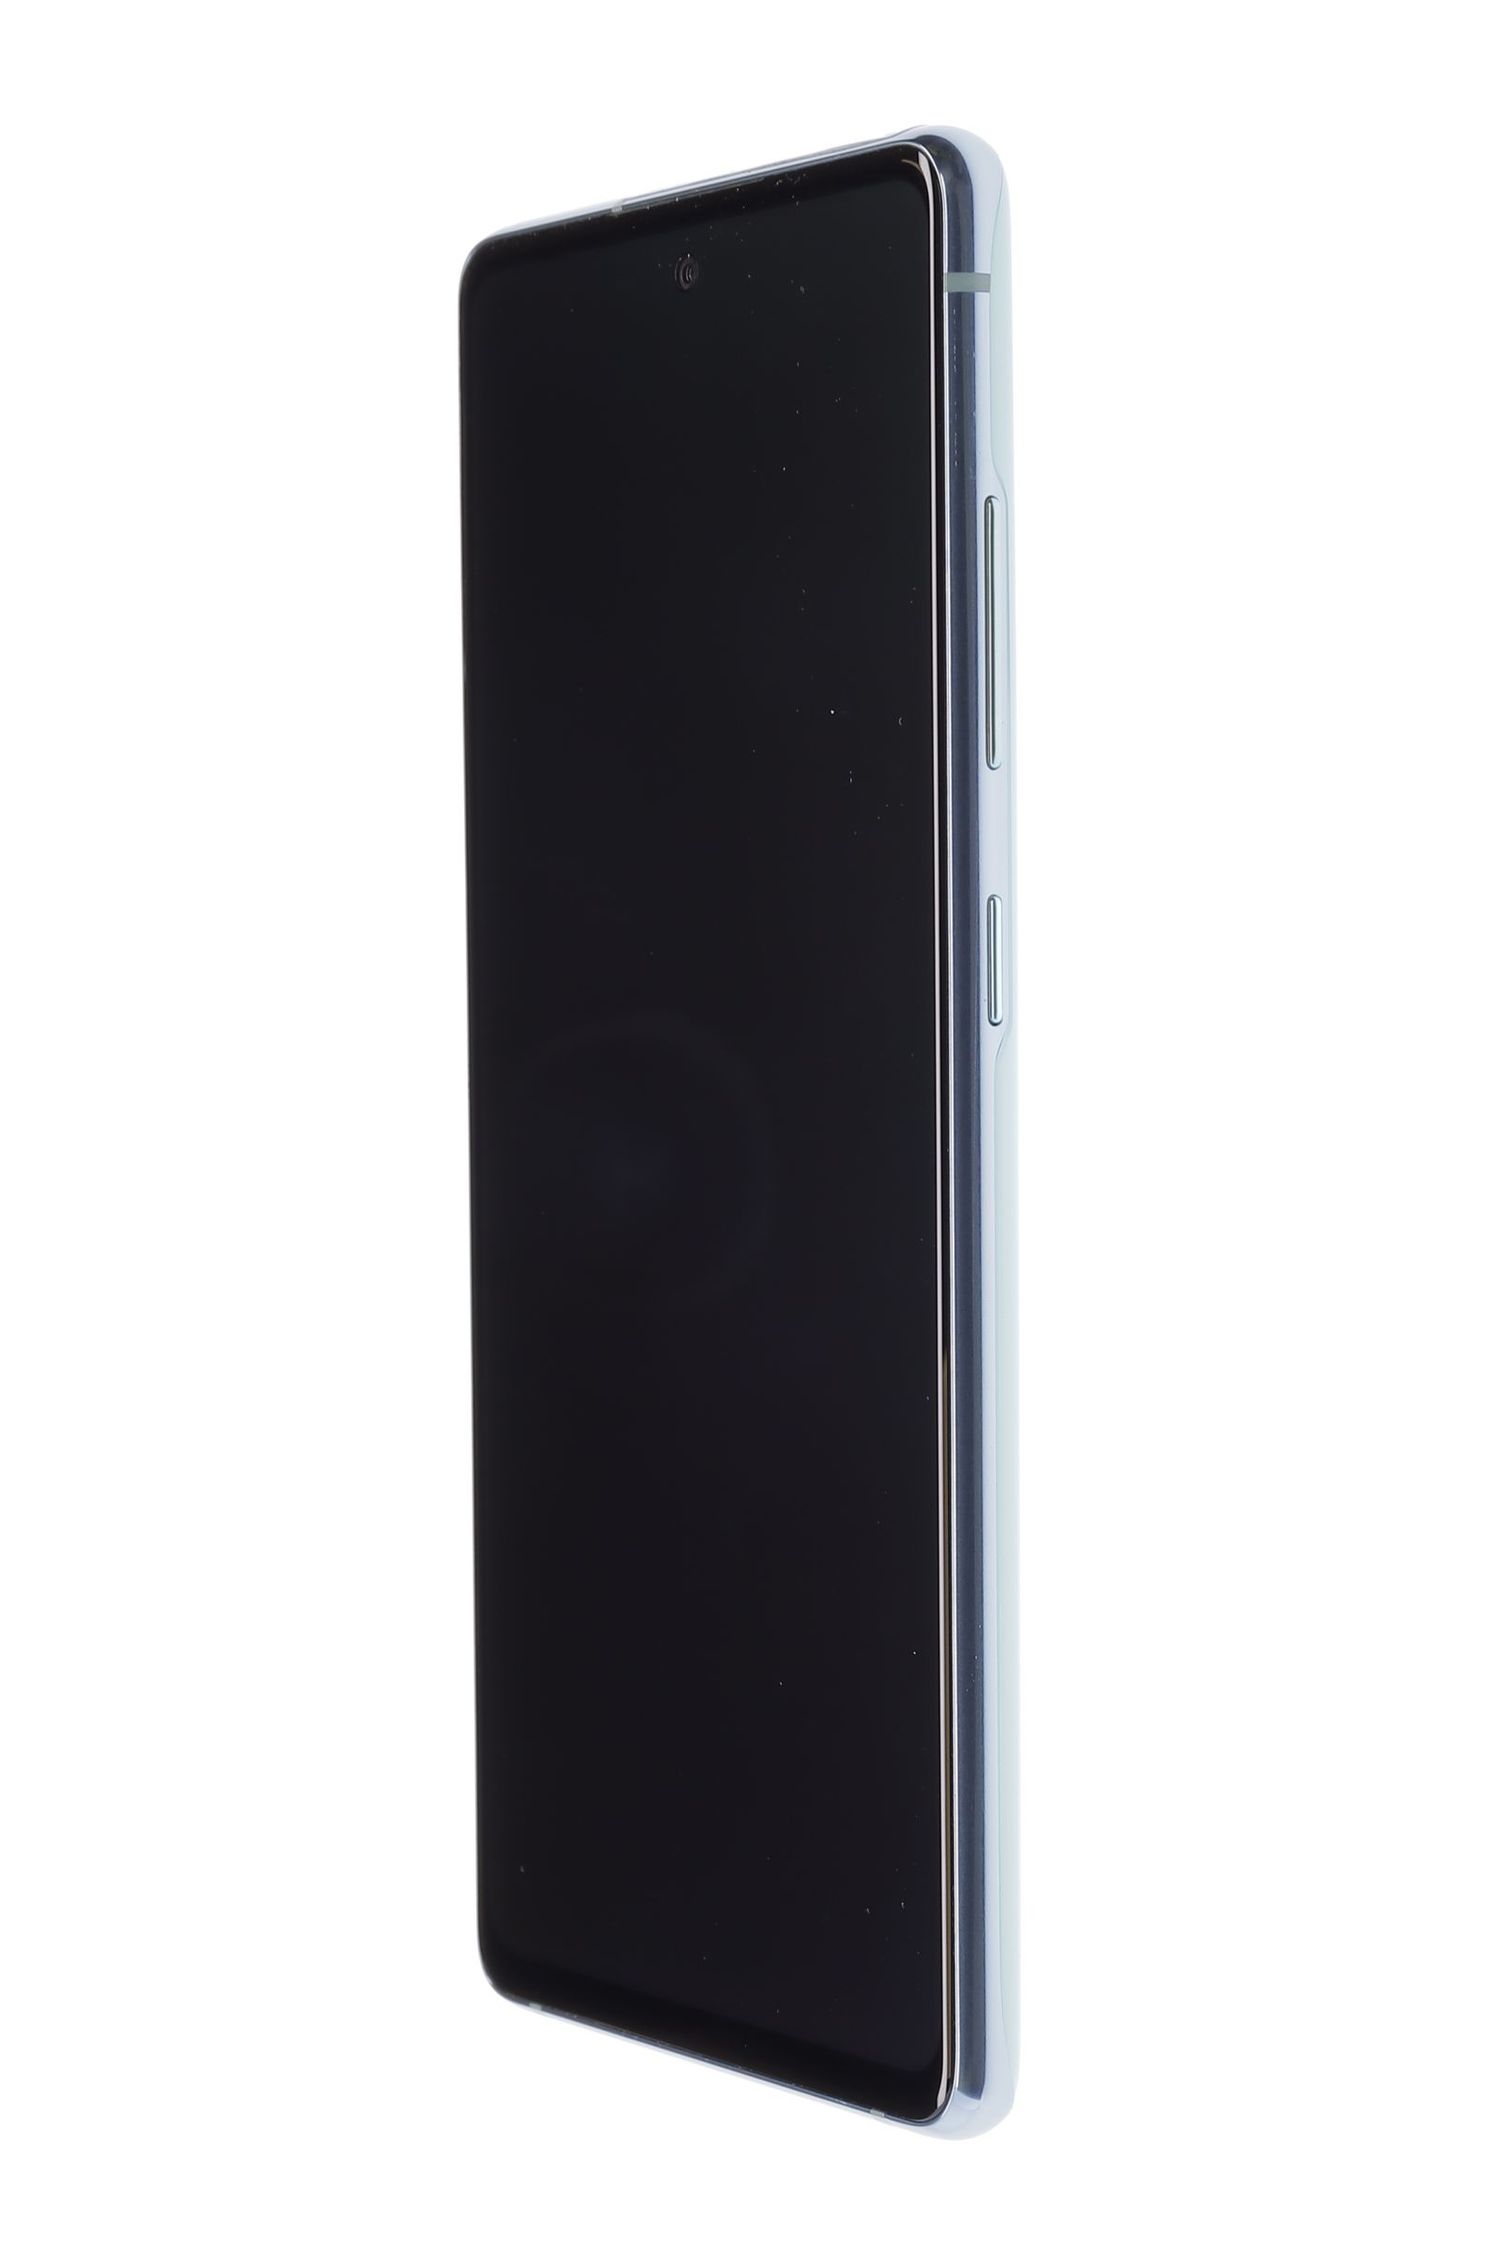 Κινητό τηλέφωνο Samsung Galaxy S20 FE Dual Sim, Cloud Mint, 128 GB, Excelent